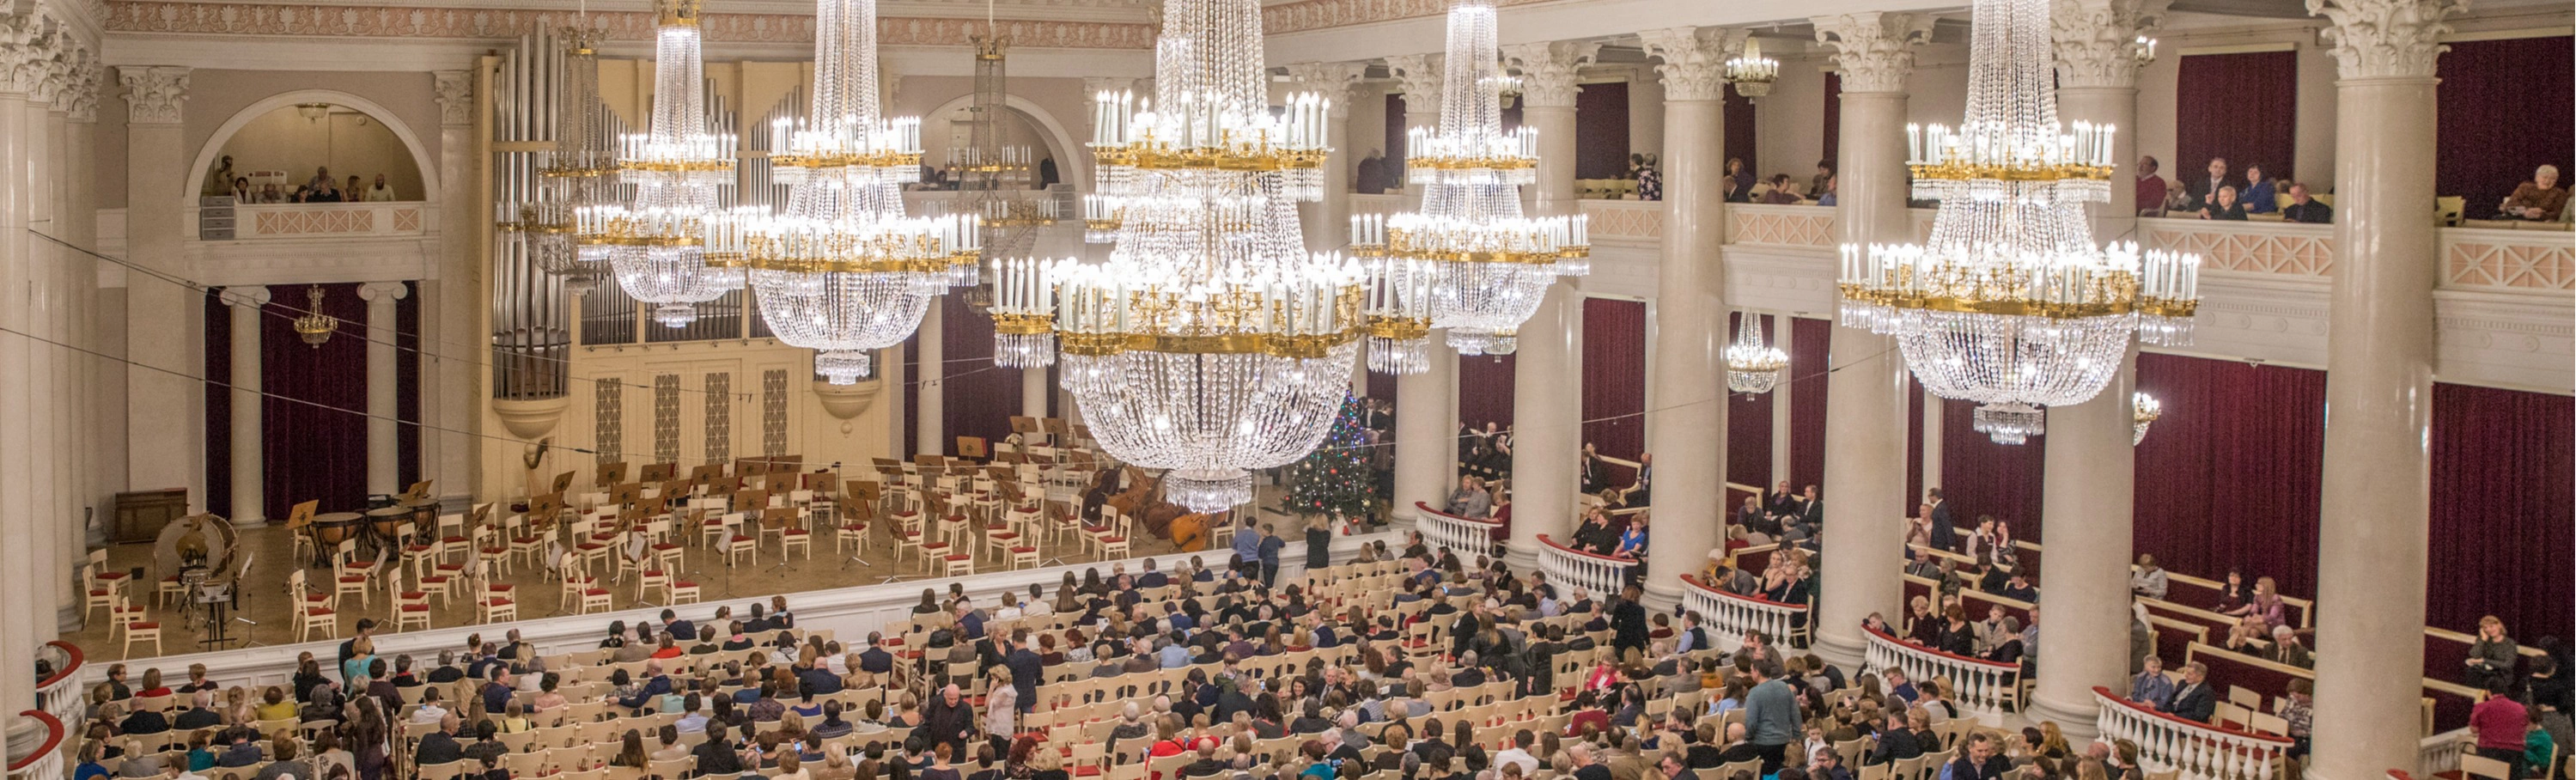 В Филармонии Д.Д. Шостаковича конкурс на замещение нескольких вакансий
